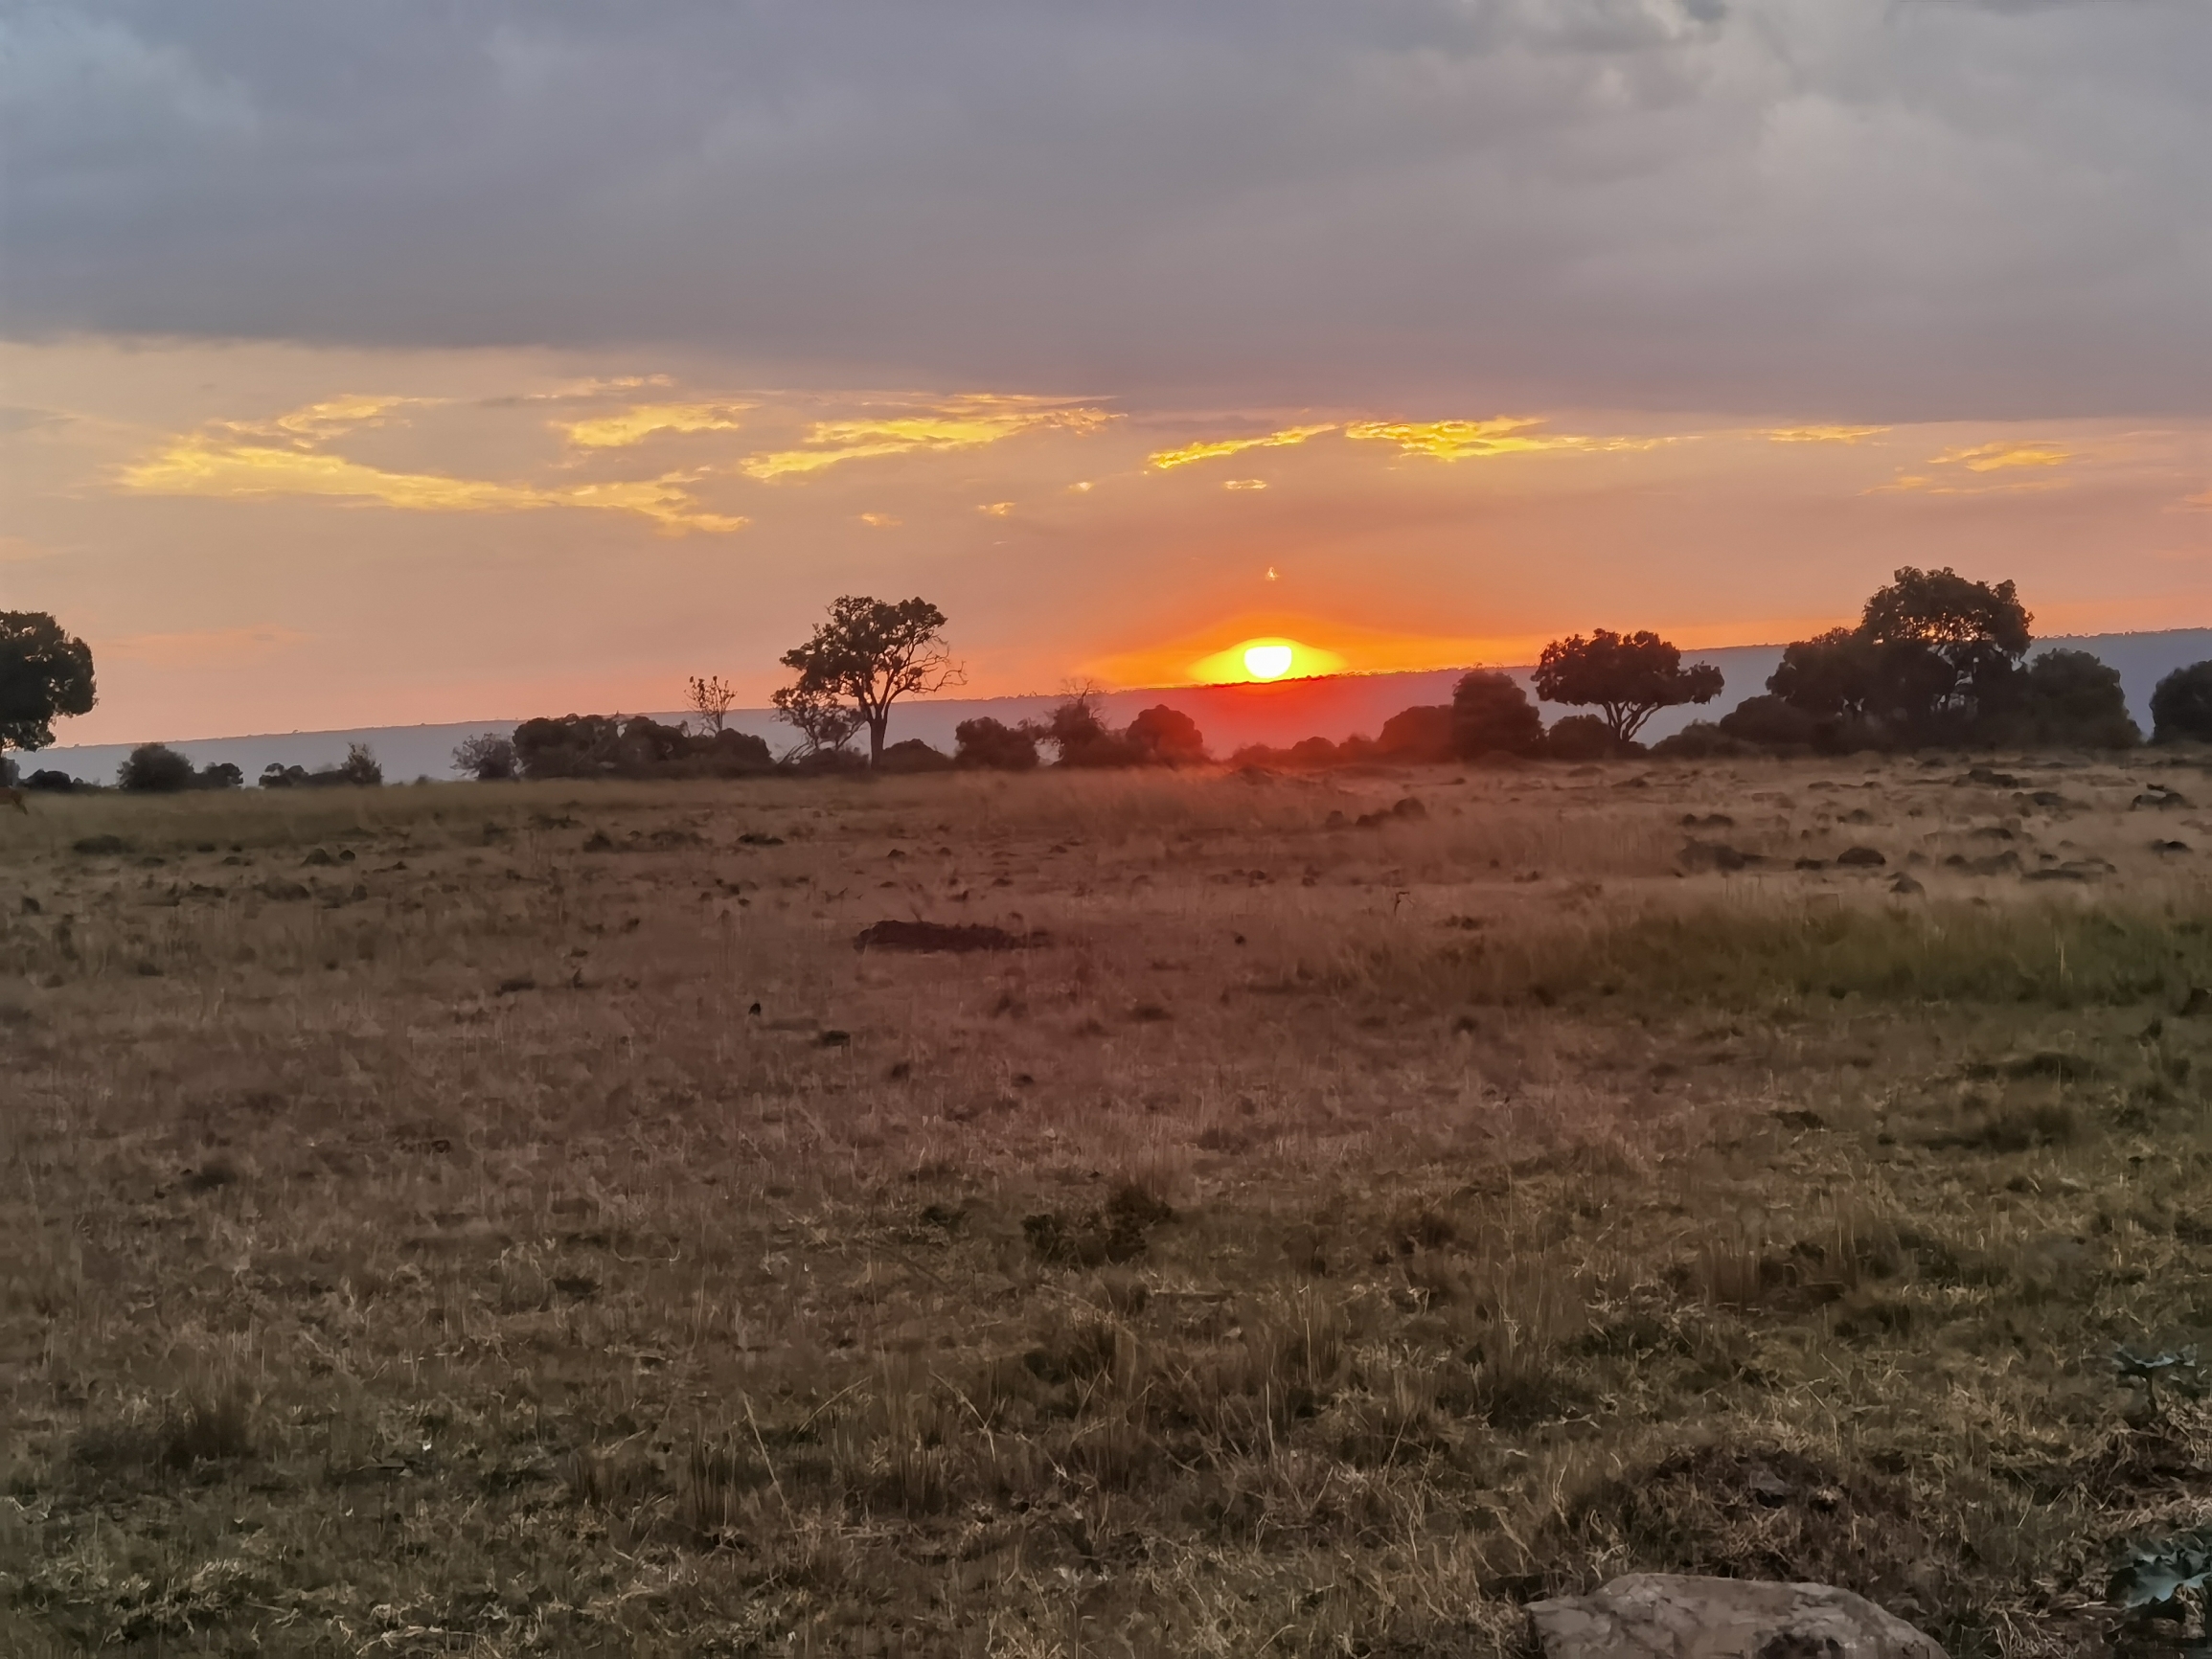 一望无际的马塞马拉大草原在落日的余晖中宁静而美丽。